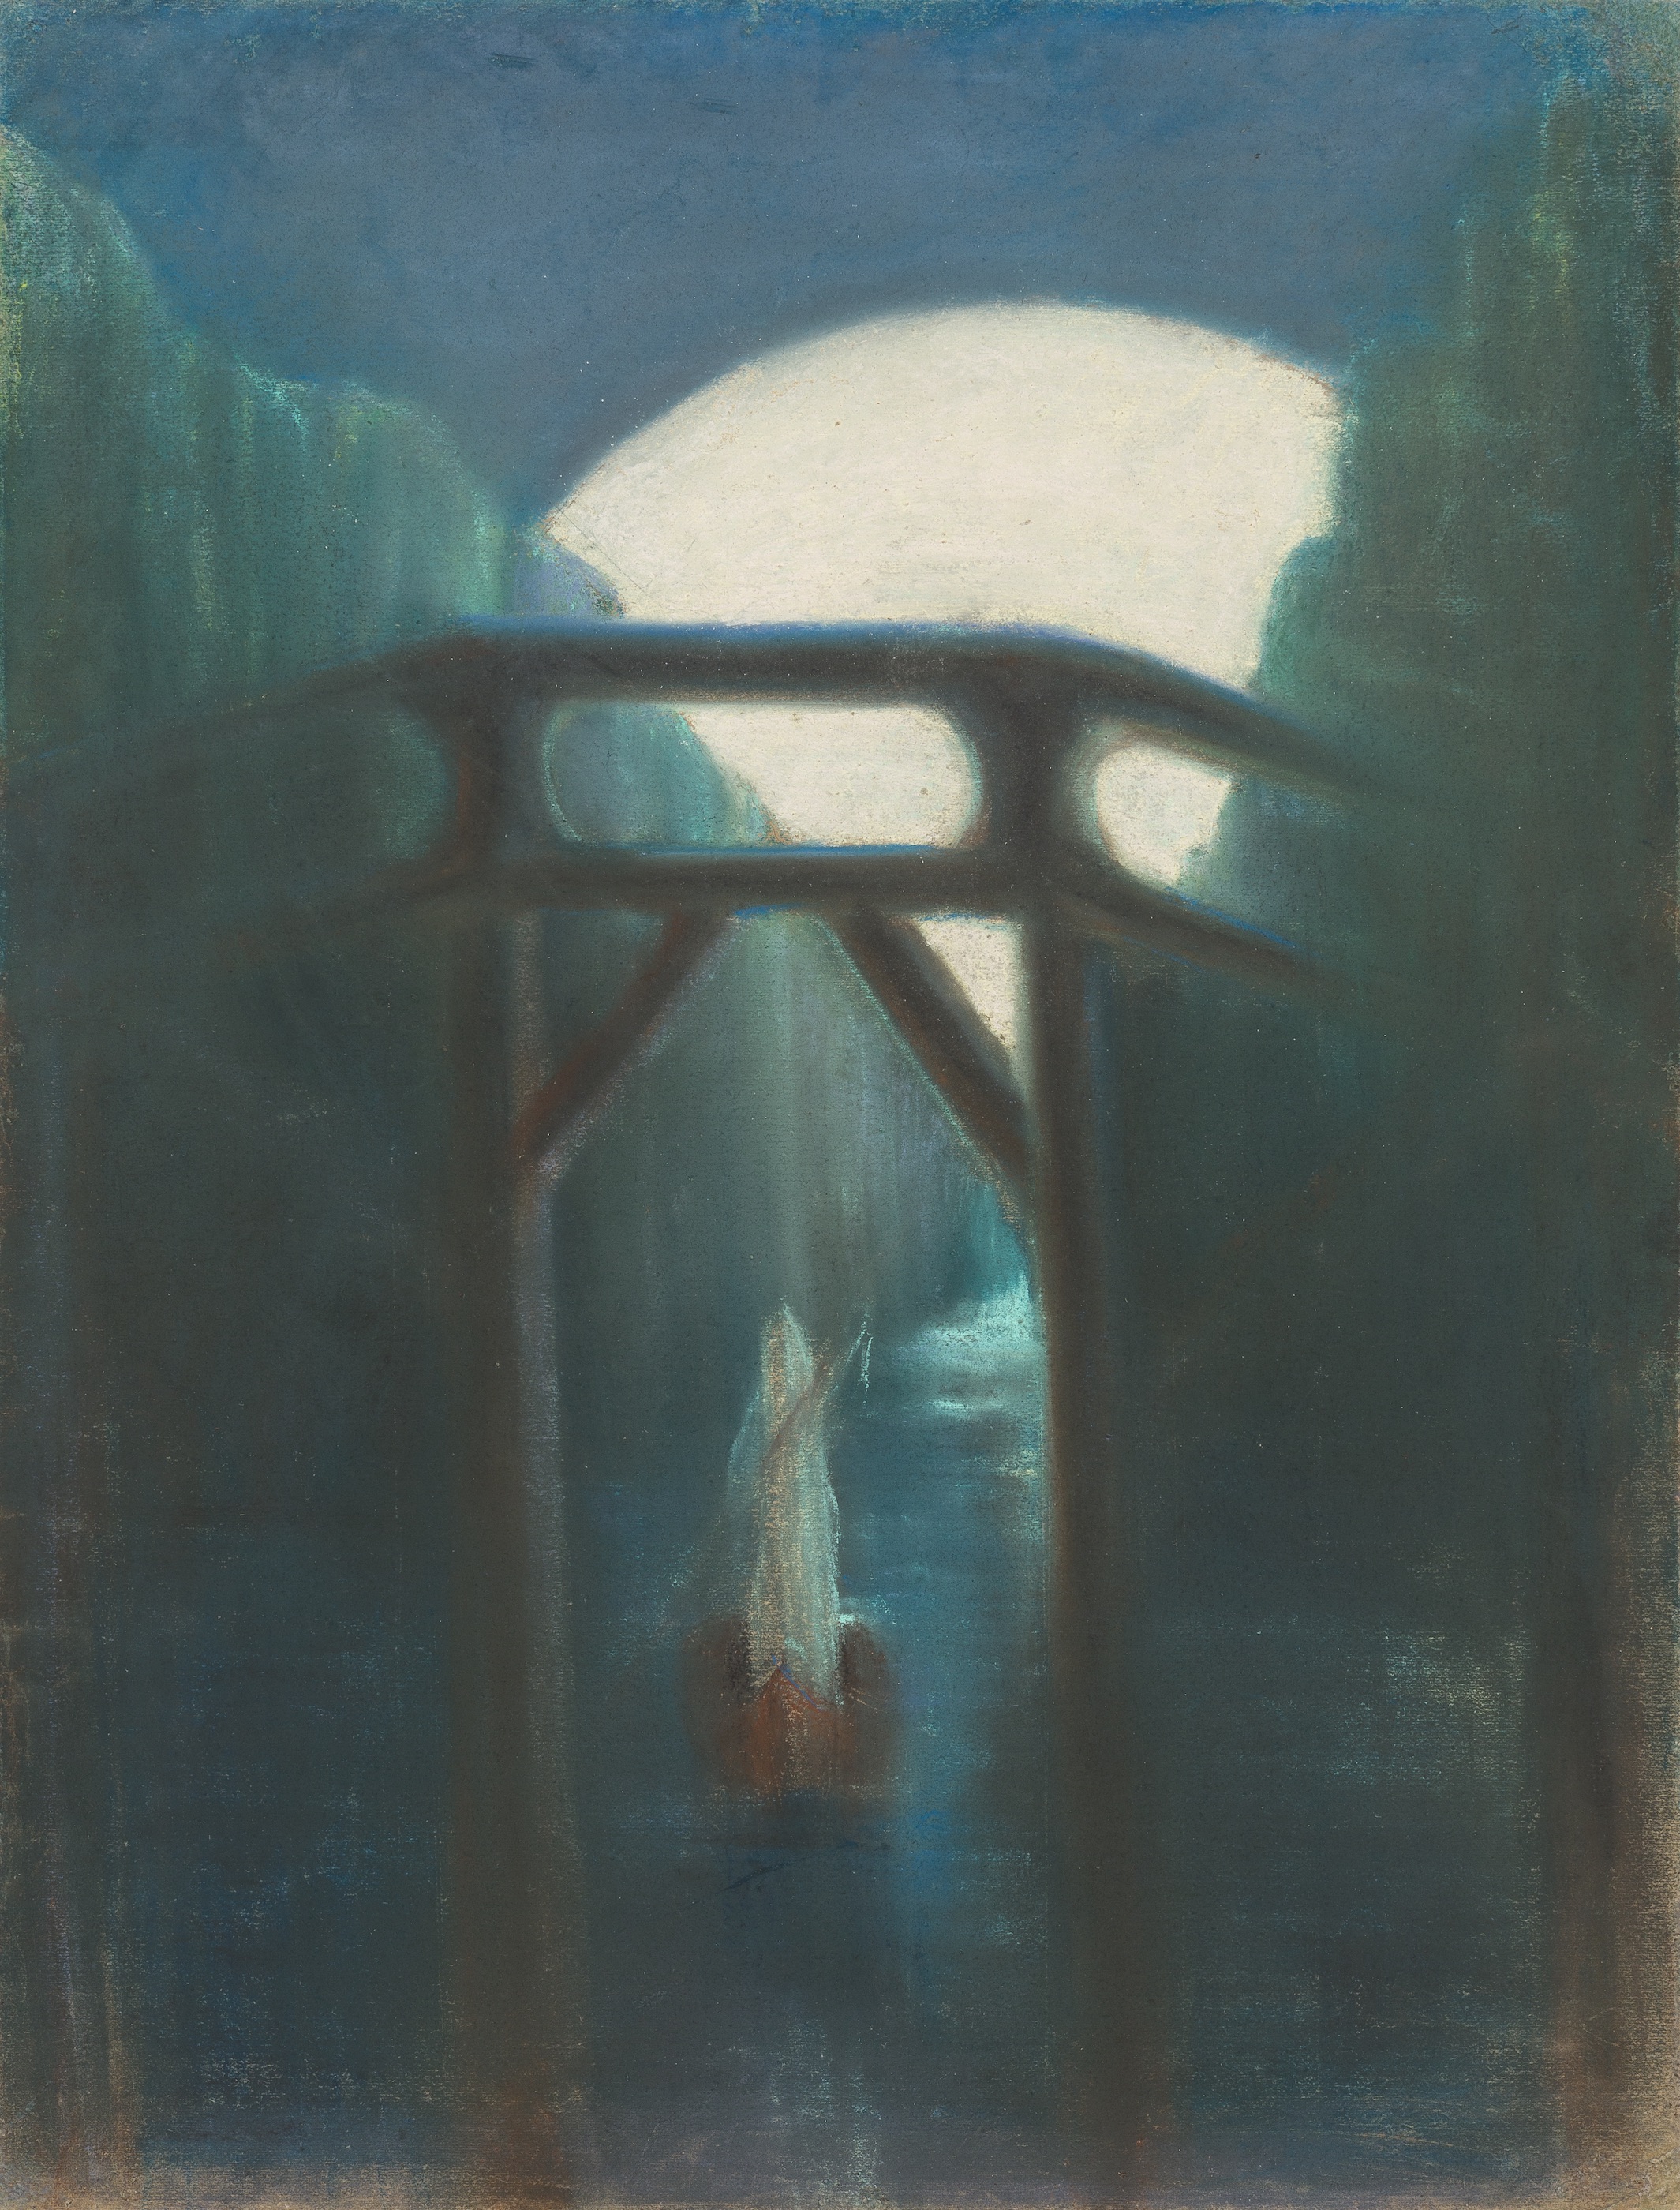 Noite by Mikalojus Konstantinas Čiurlionis - 1905 - 73,5 x 56 cm 